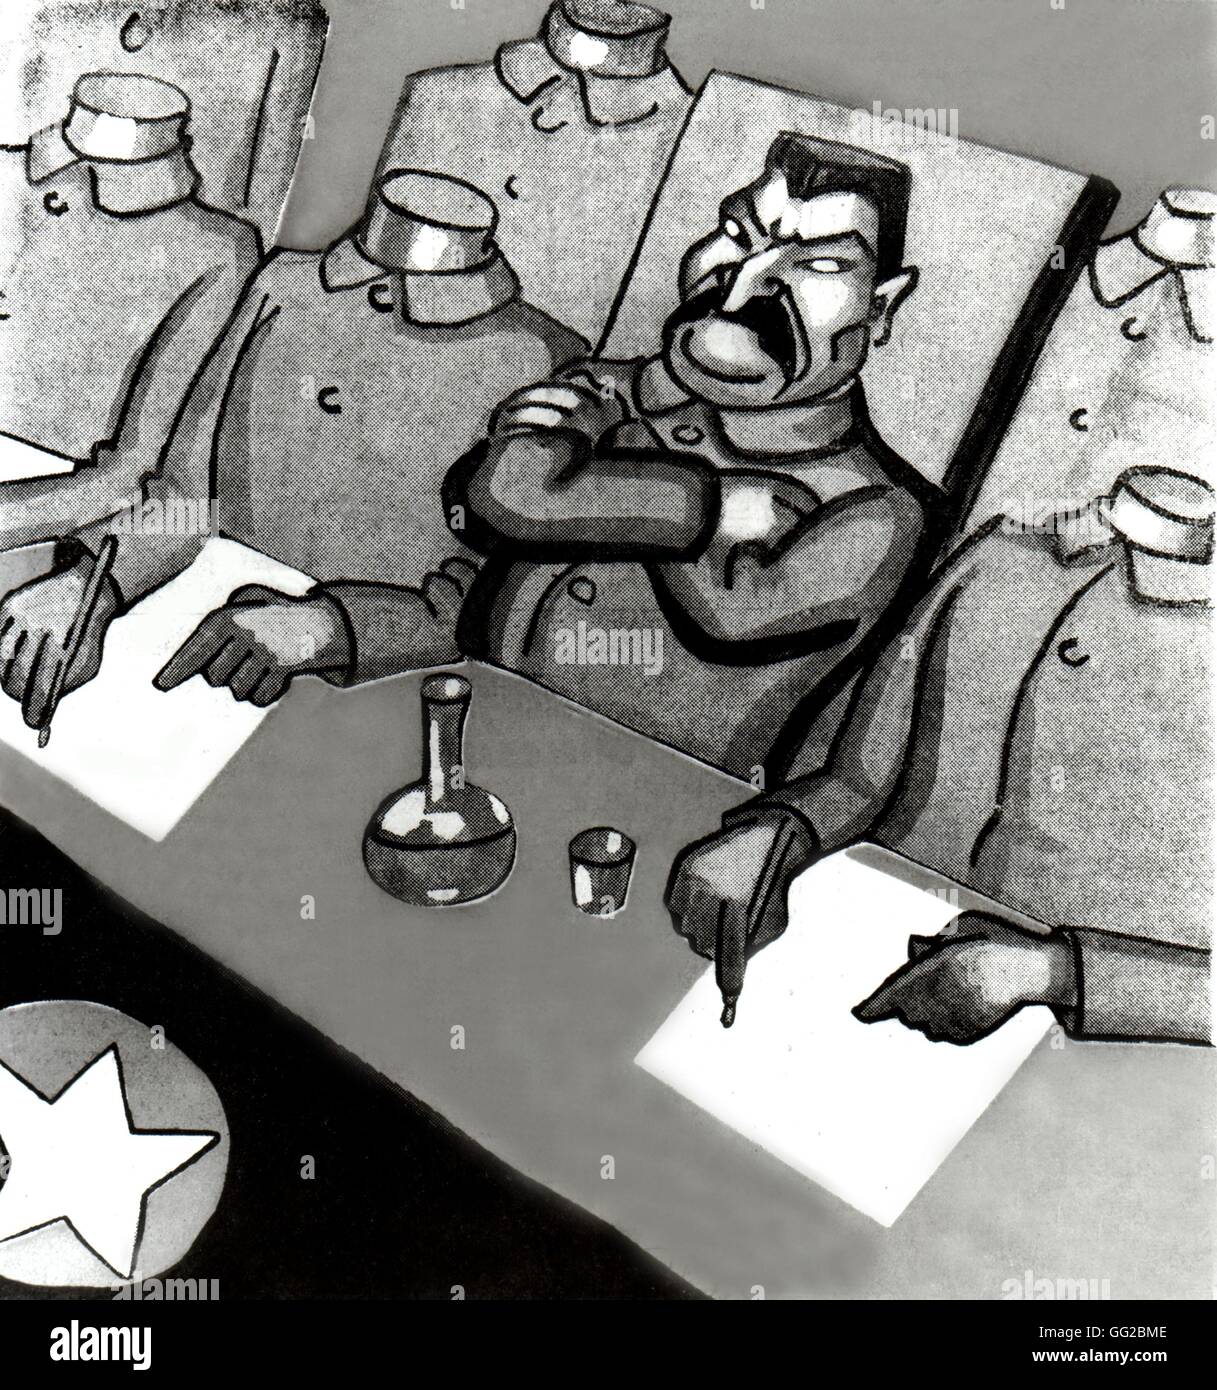 Staline et ses compagnons. Dessin animé satirique dans le journal 'Aux Ecoutes' URSS 1938 Banque D'Images